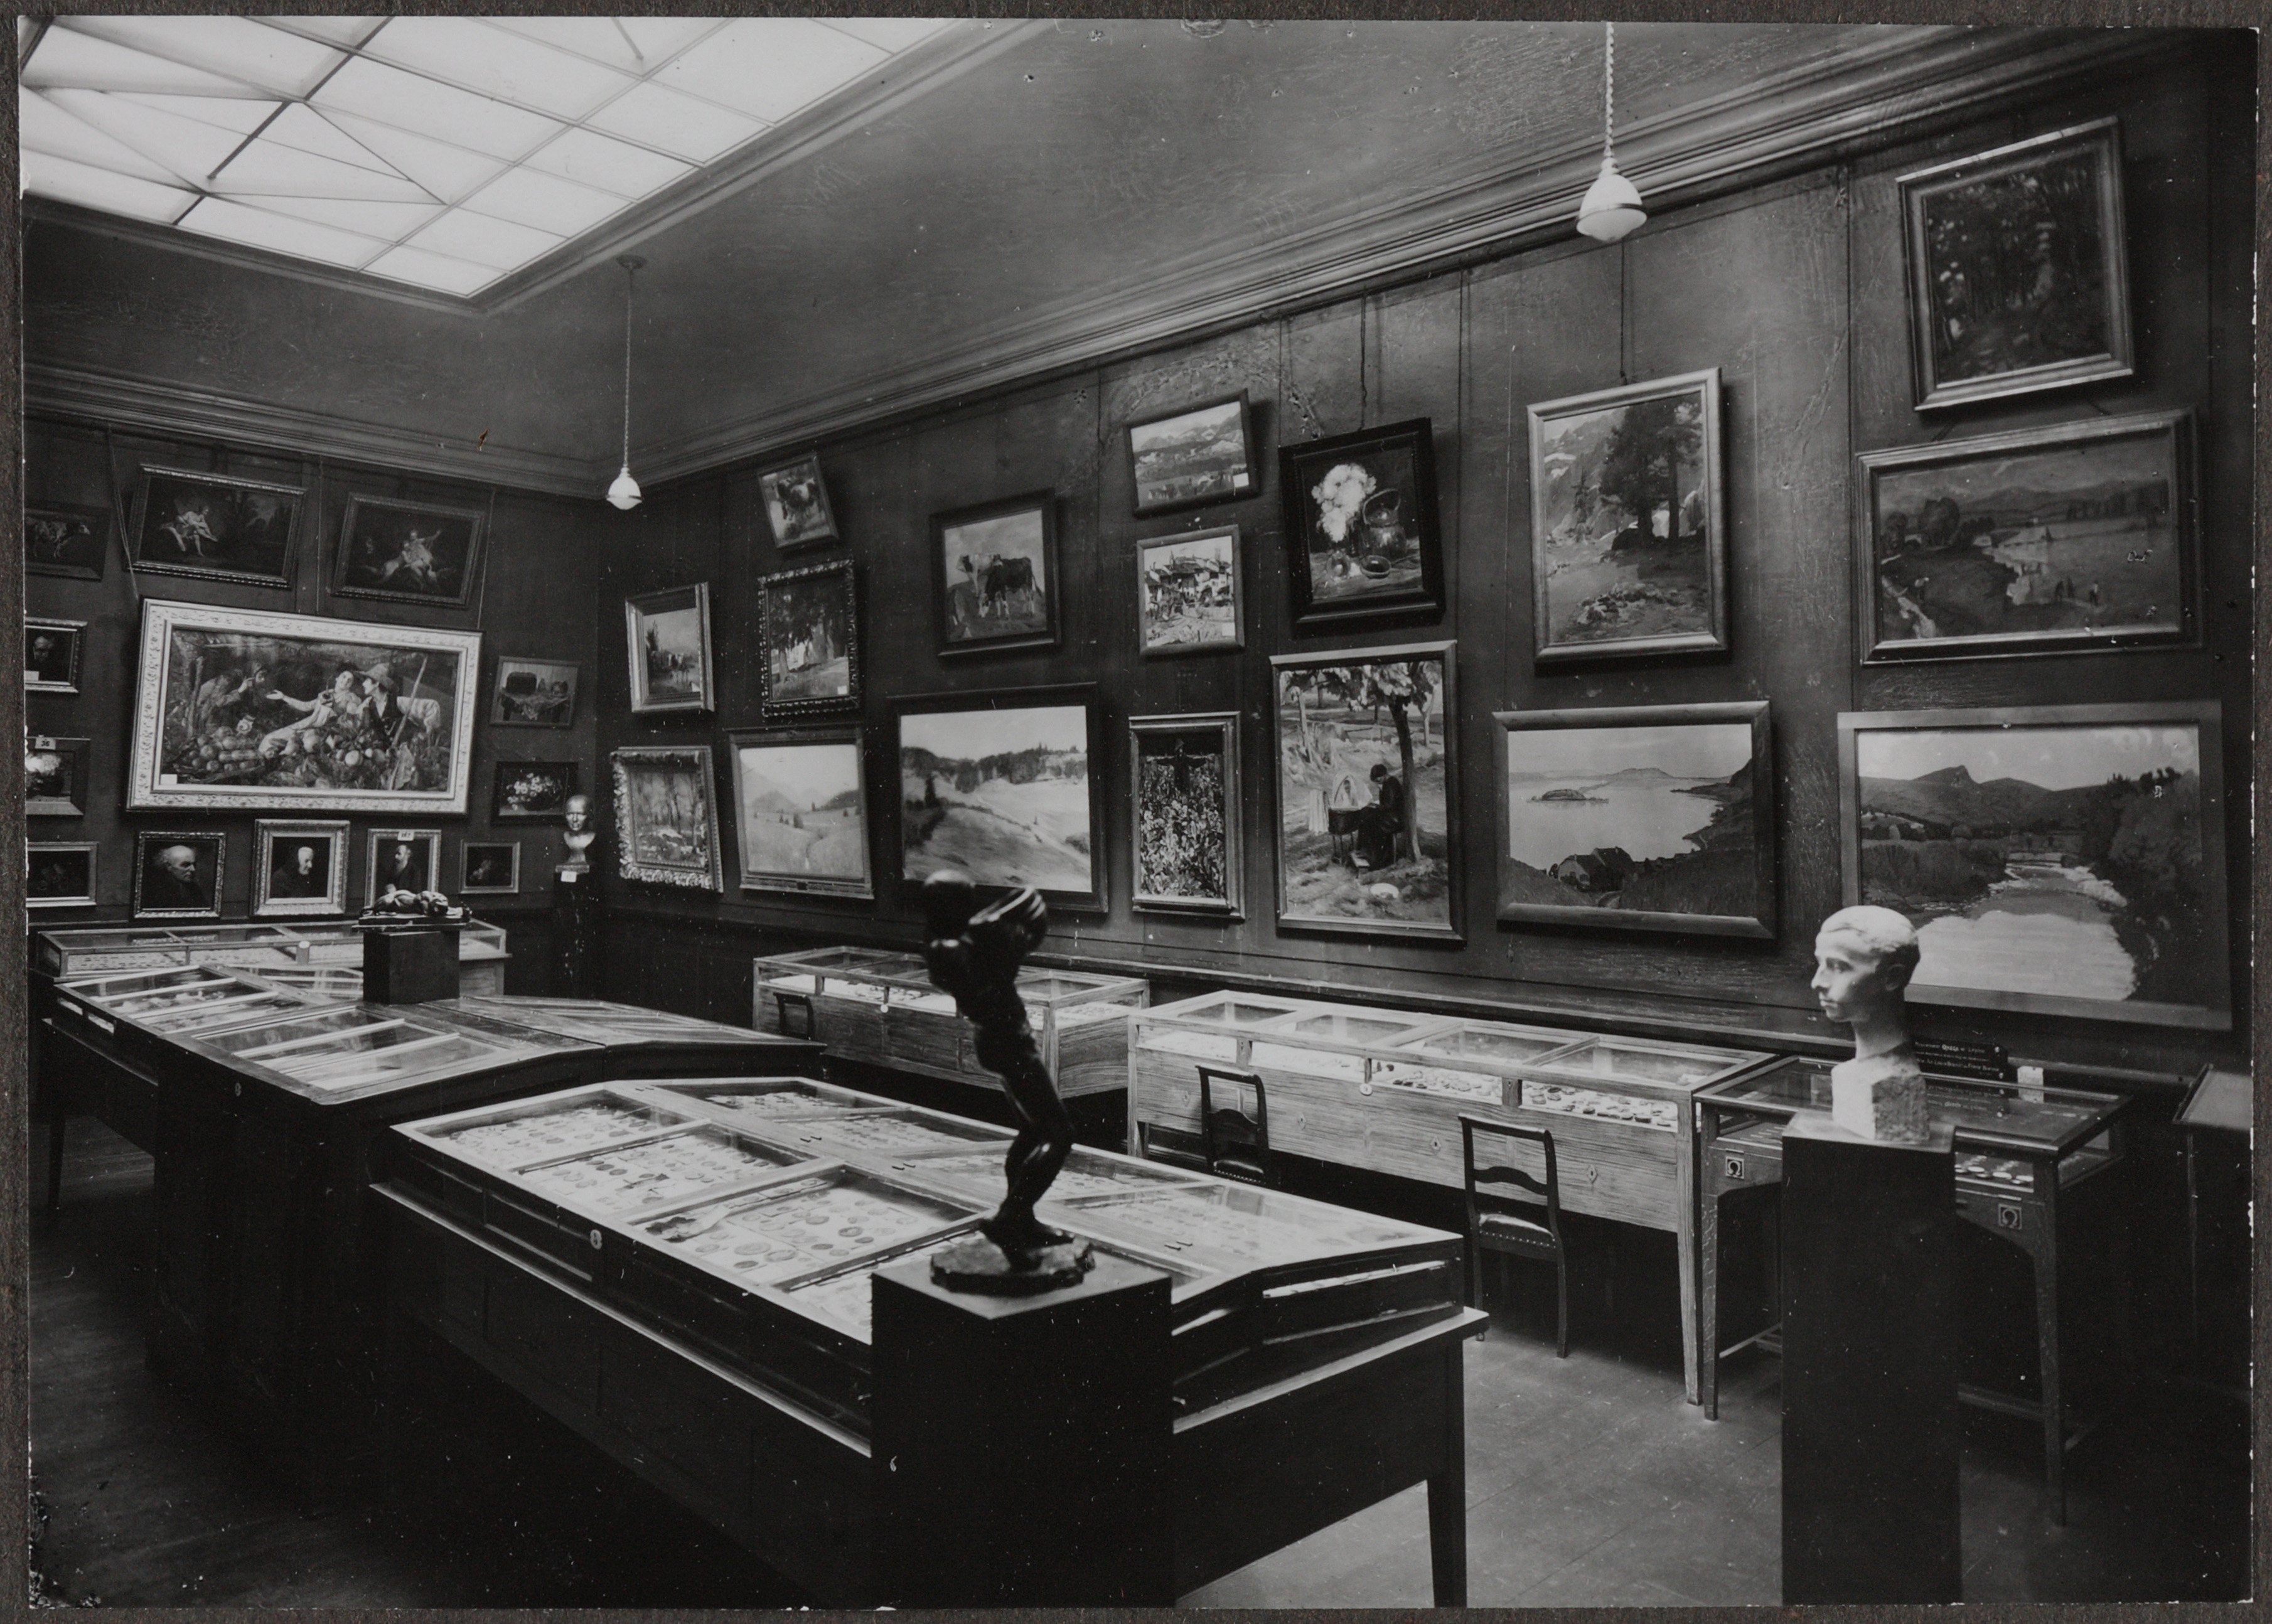 Eine schwarz-weiss Fotografie von einem Saal mit vielen Bildern, Skulpturen, und Vitrinen mit Stühlen davor. Licht kommt durch ein Deckenfenster.